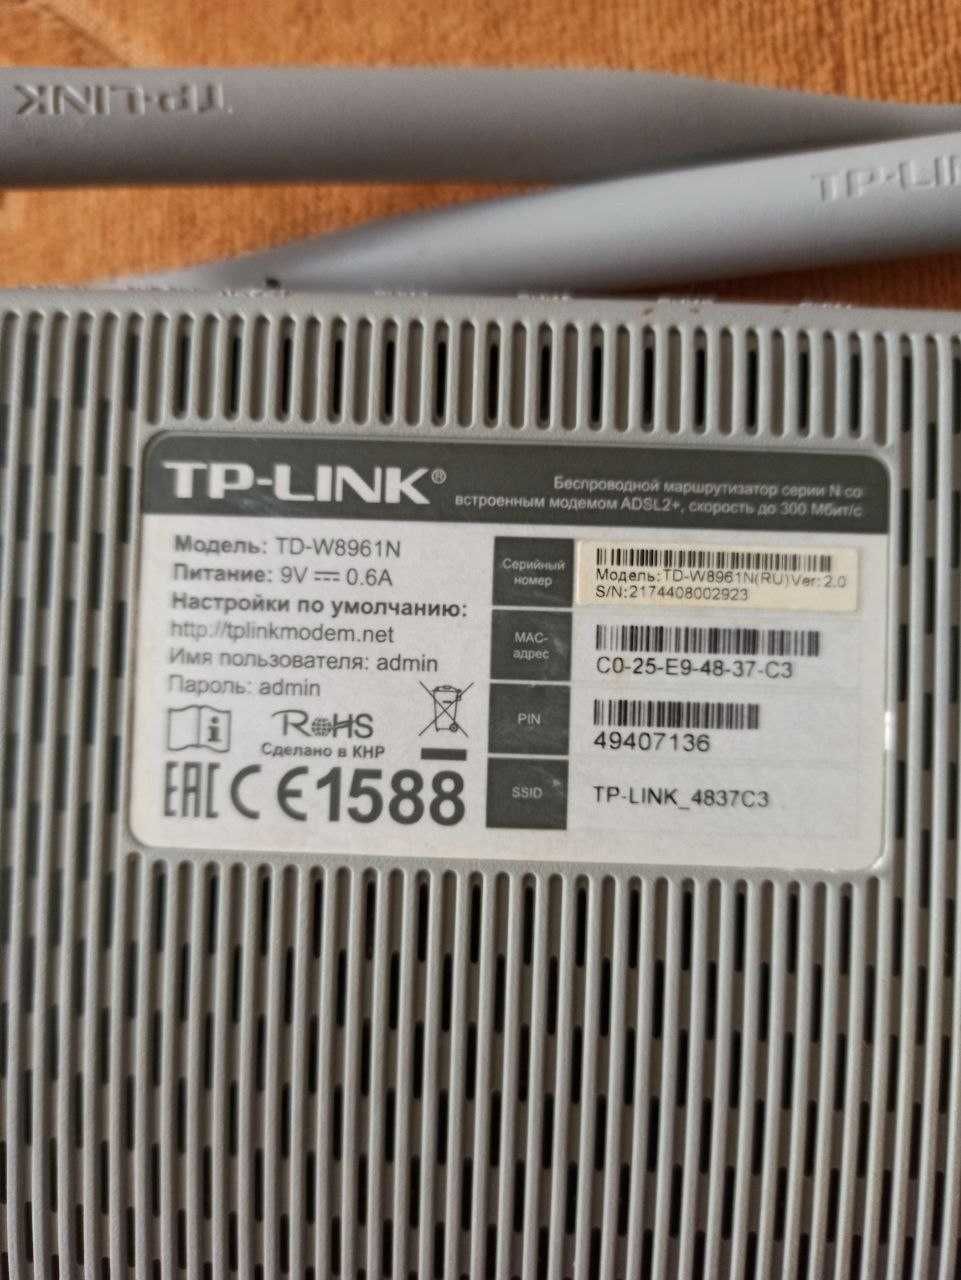 Модем ADSL2+ TD-W8961N